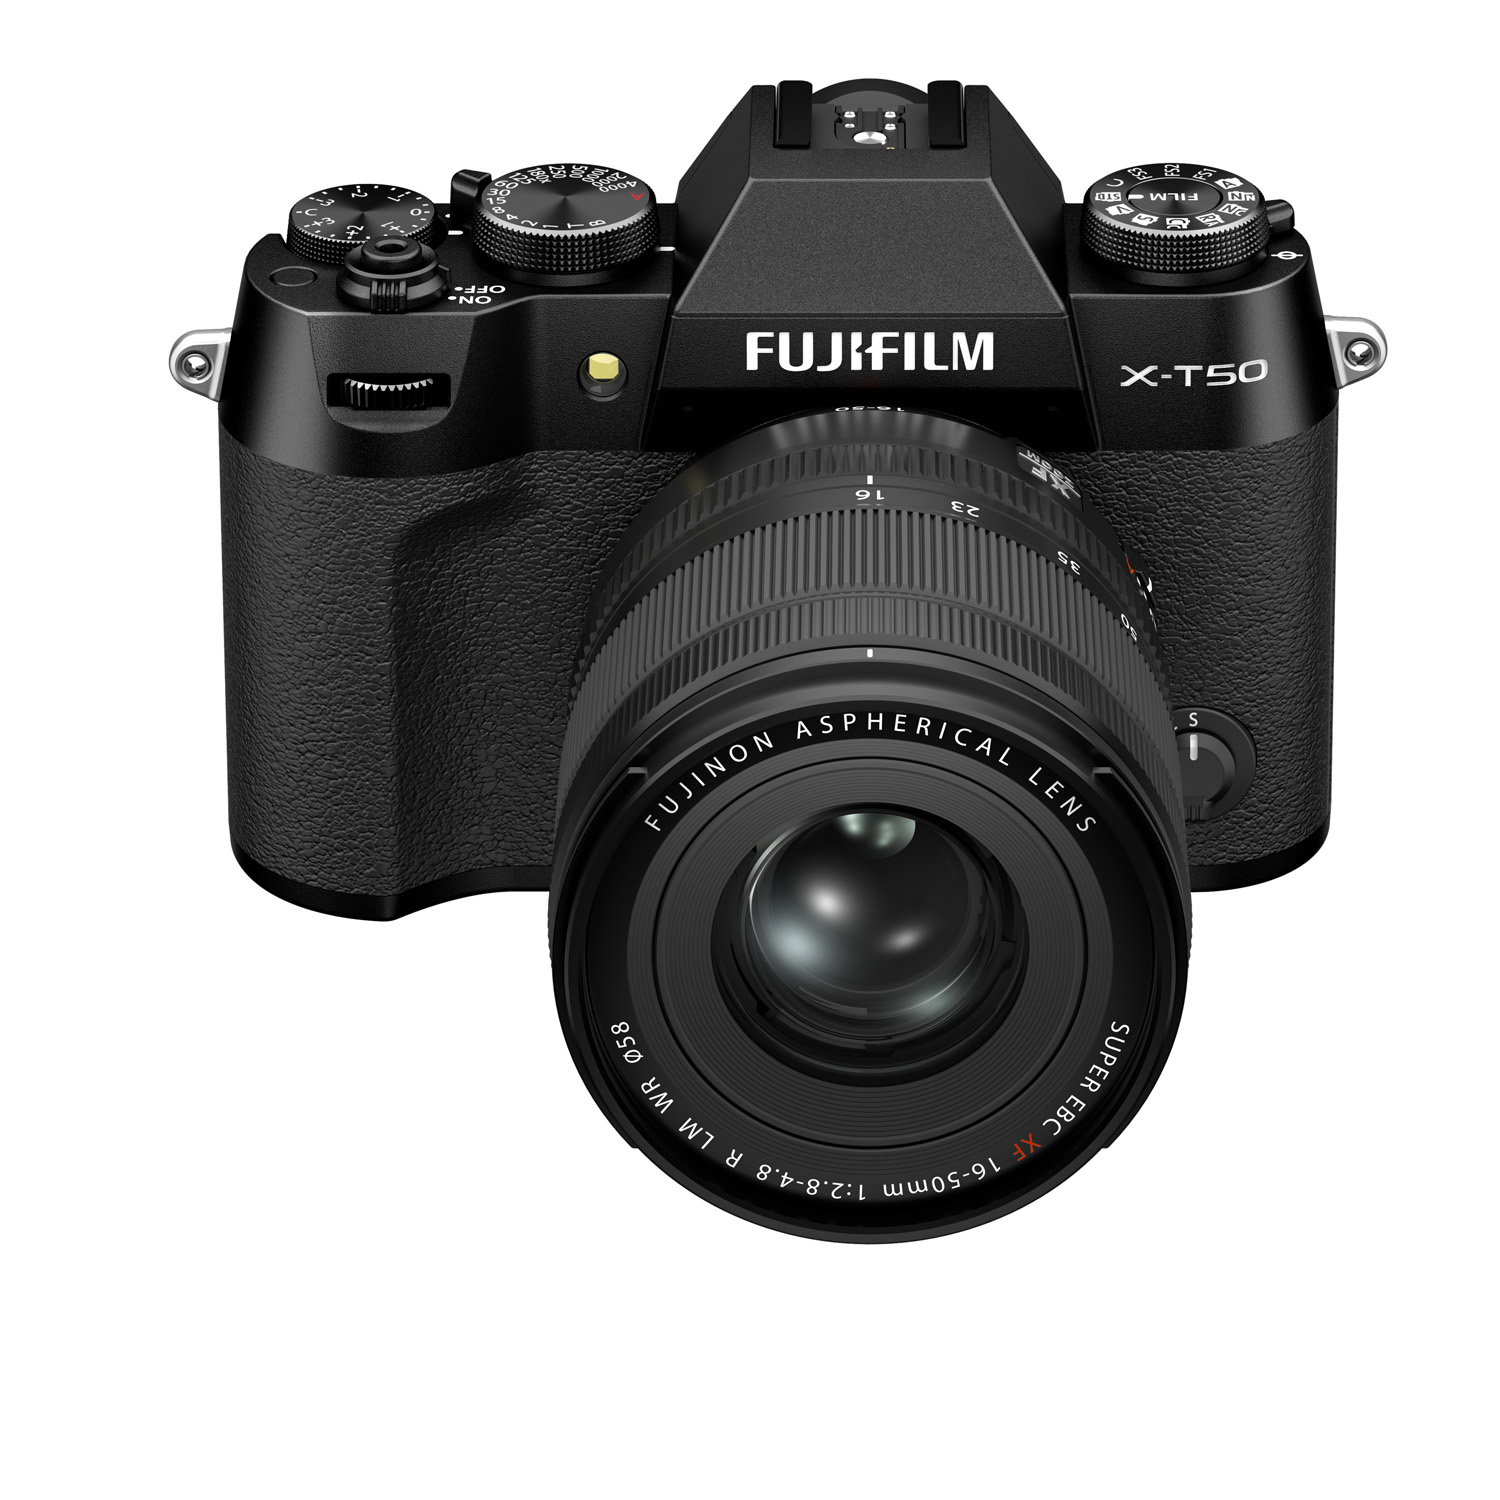 Снимок камеры Fujifilm X-T50 на белом фоне, вид спереди